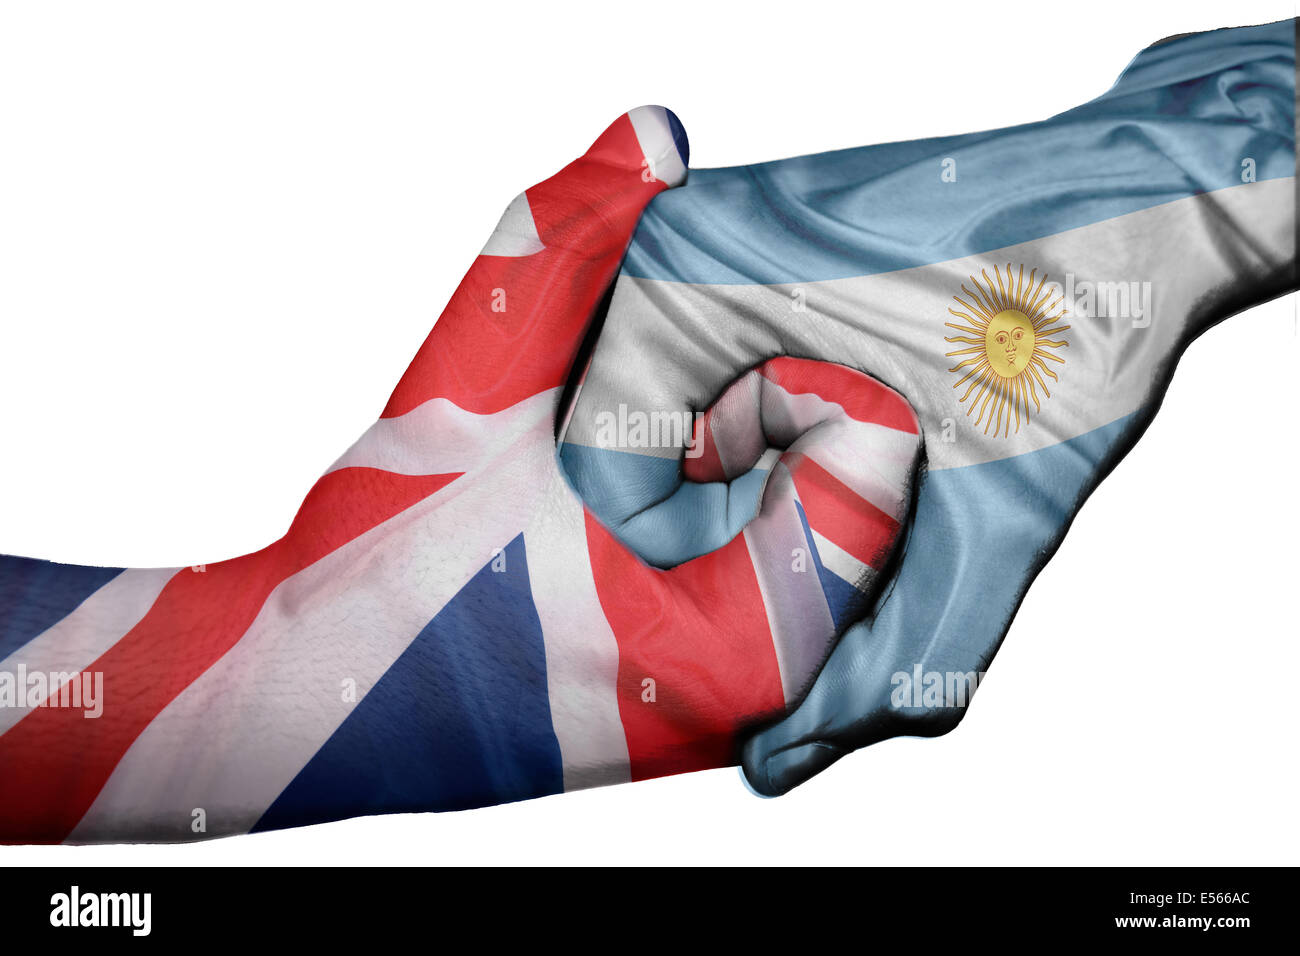 Handshake diplomatiche tra paesi: bandiere del Regno Unito e Argentina sovradipinta le due mani Foto Stock